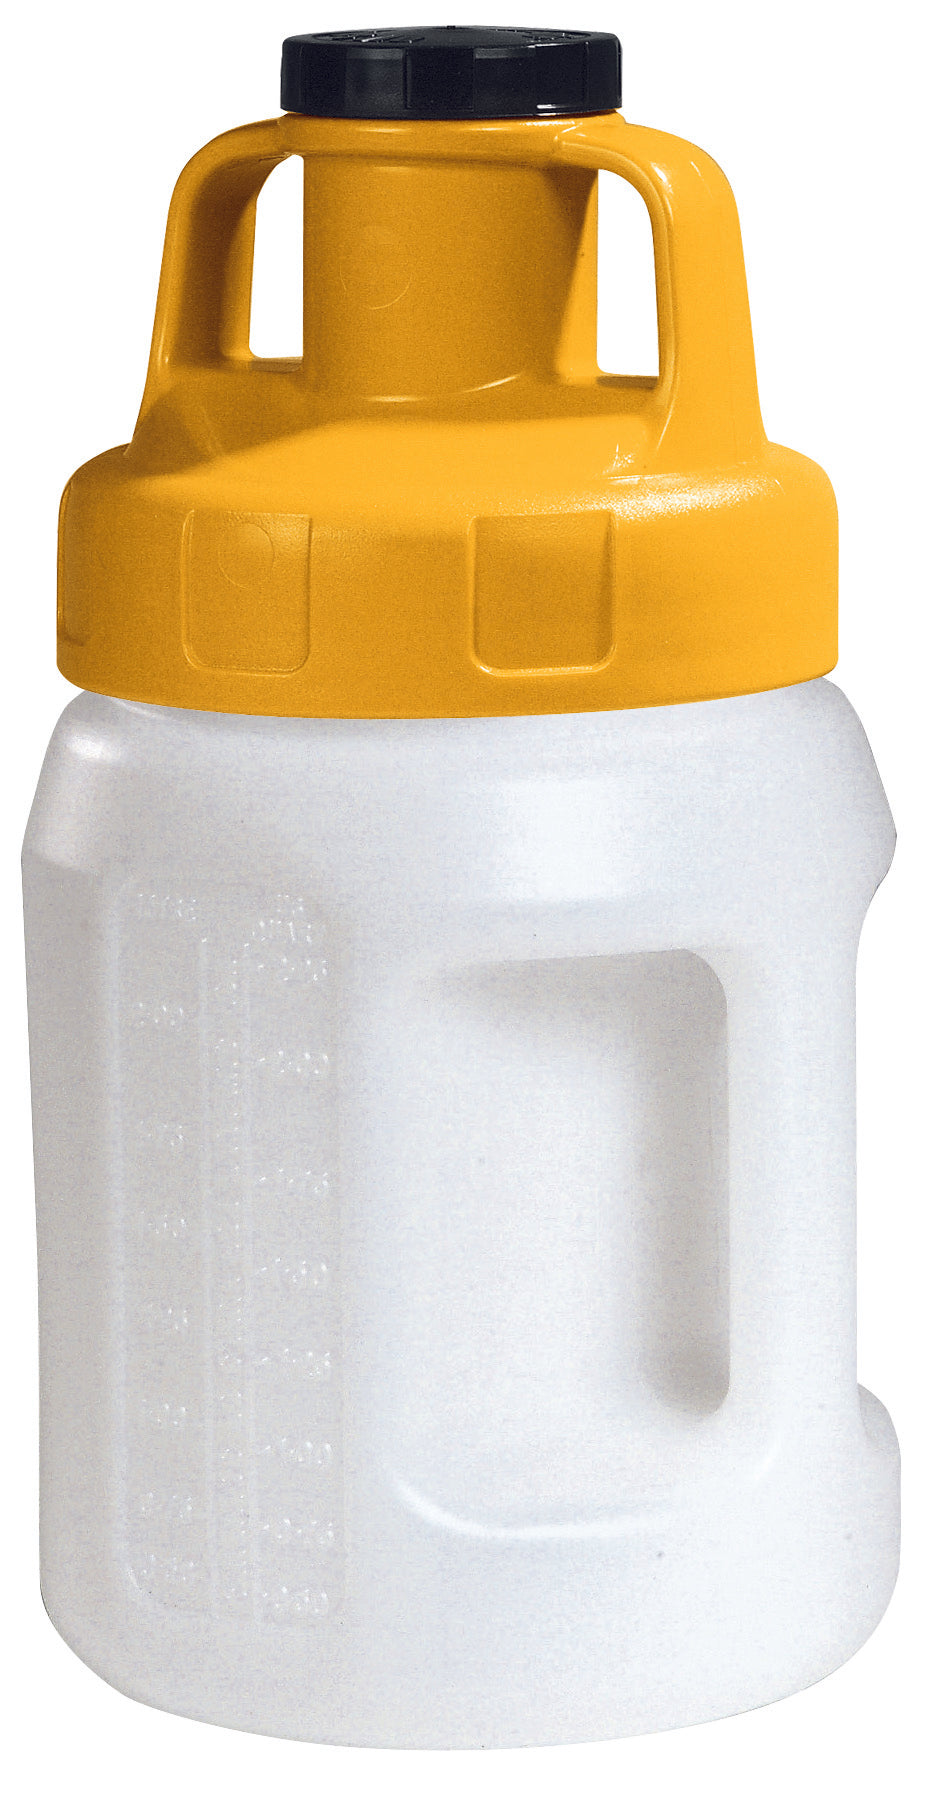 Öl-Kanne aus HDPE 2 Liter mit gelbem Allzweckdeckel, Polyethylen (high density)